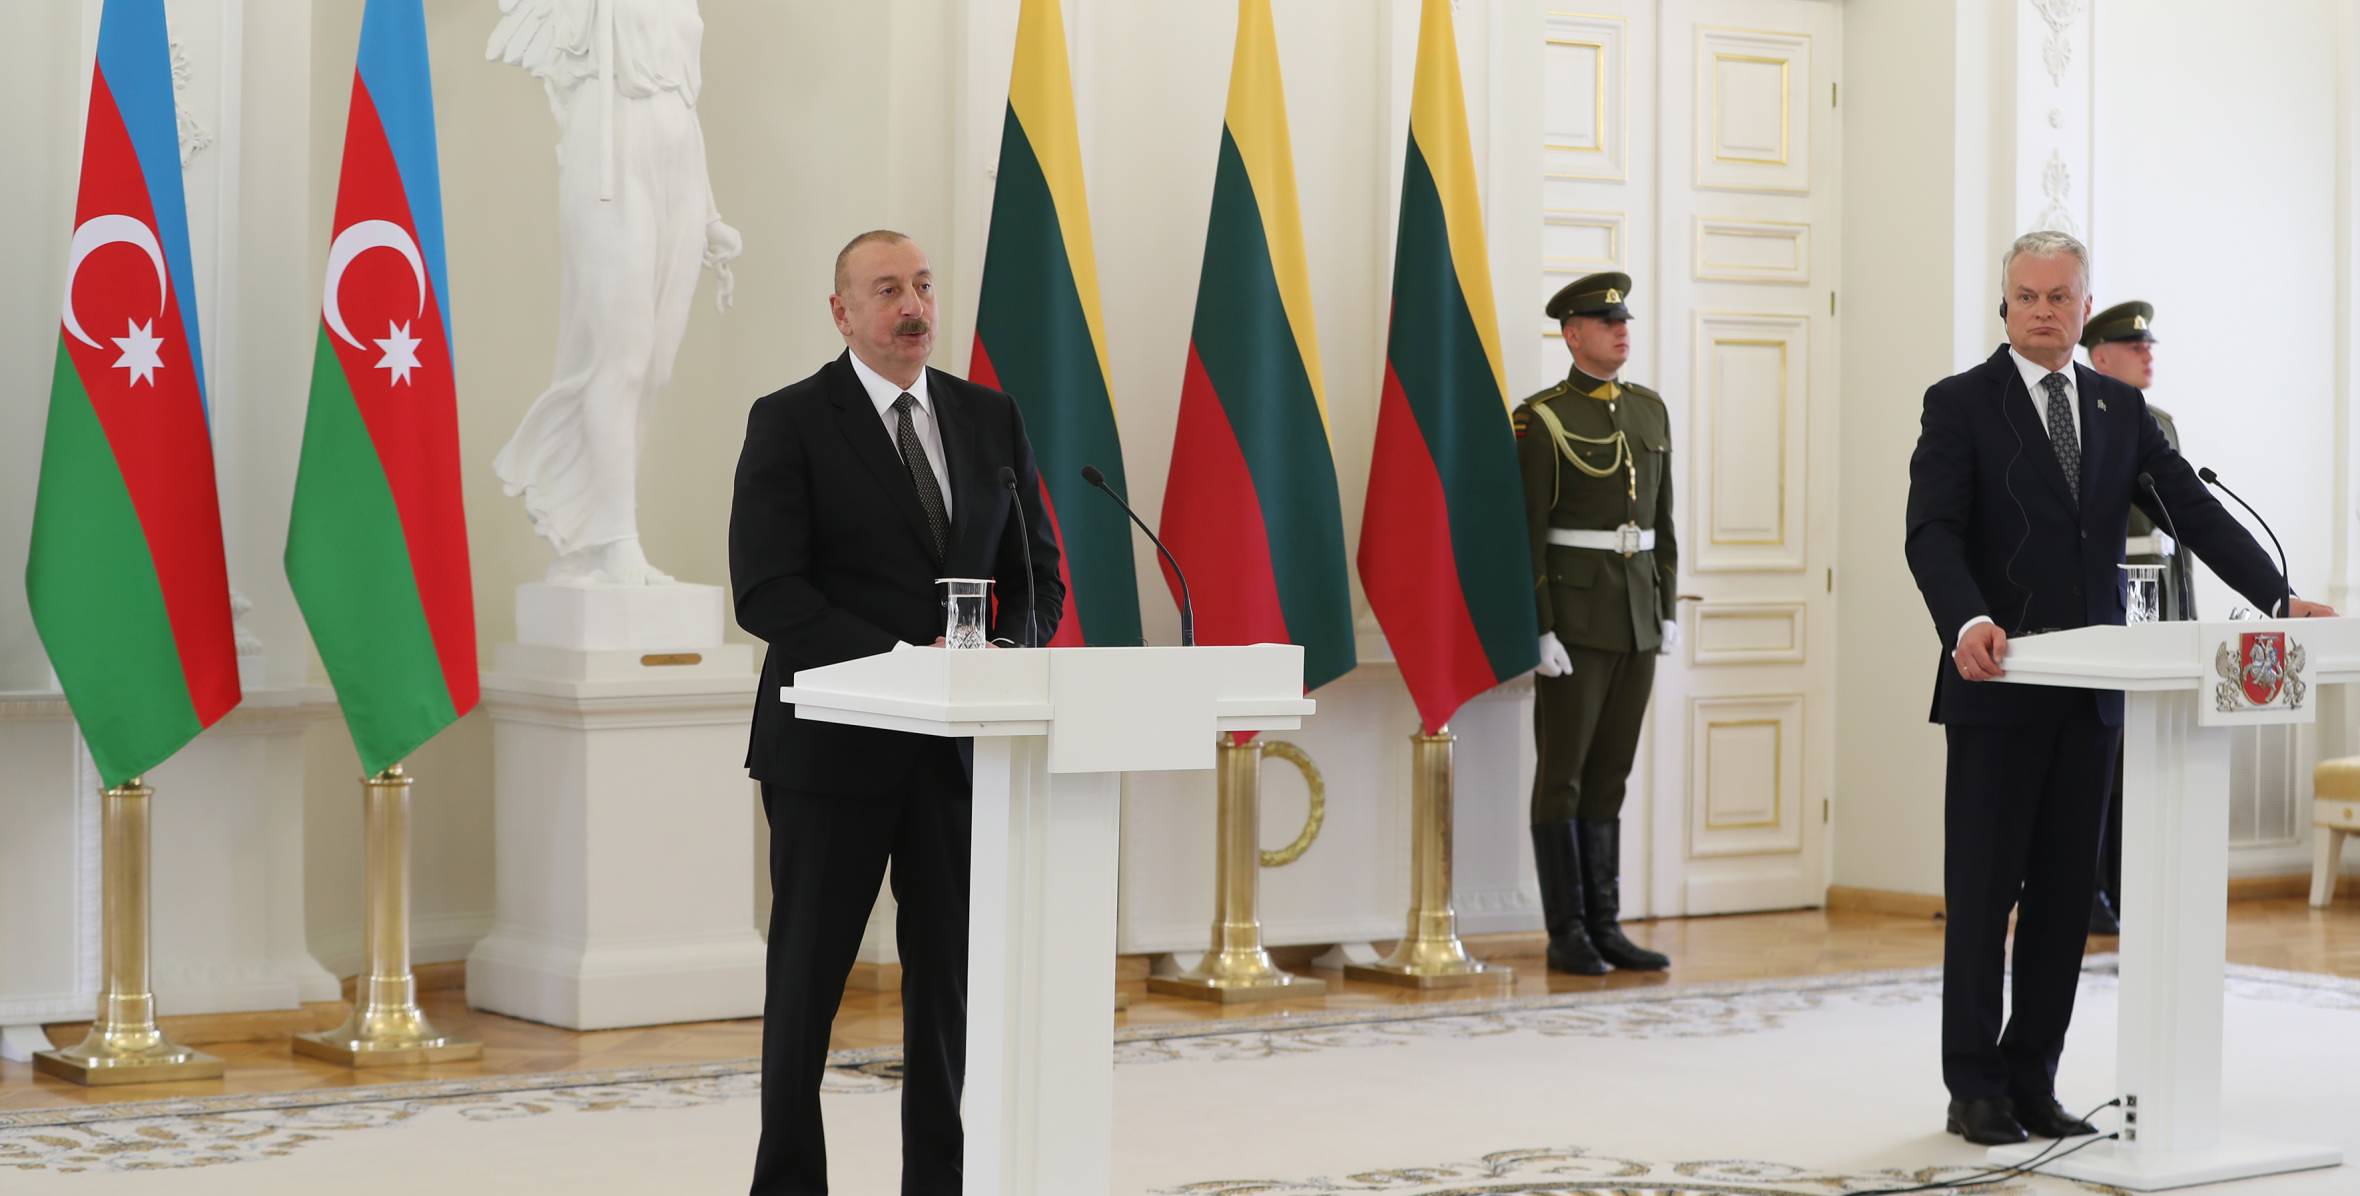 Президенты Азербайджана и Литвы выступили с заявлениями для прессы